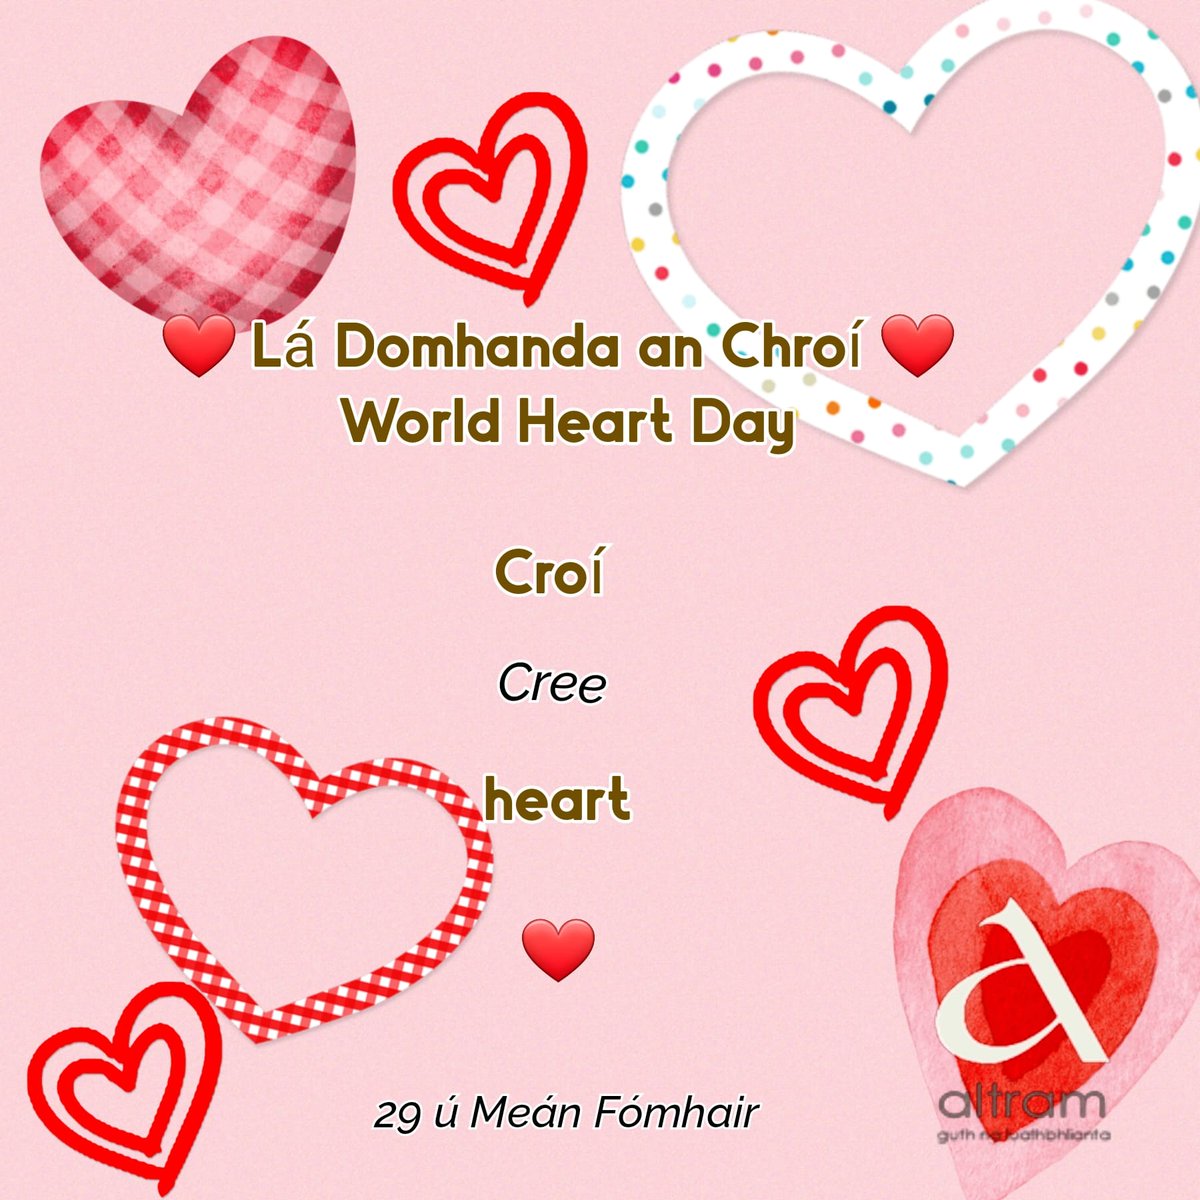 ❤️ Lá Domhanda an Chroí ❤️
       World Heart Day

Croí - cree
Heart ❤️

#YesIDonate #IsDeontóirMé #WorldHeartDay #LáDomhandaAnChroí